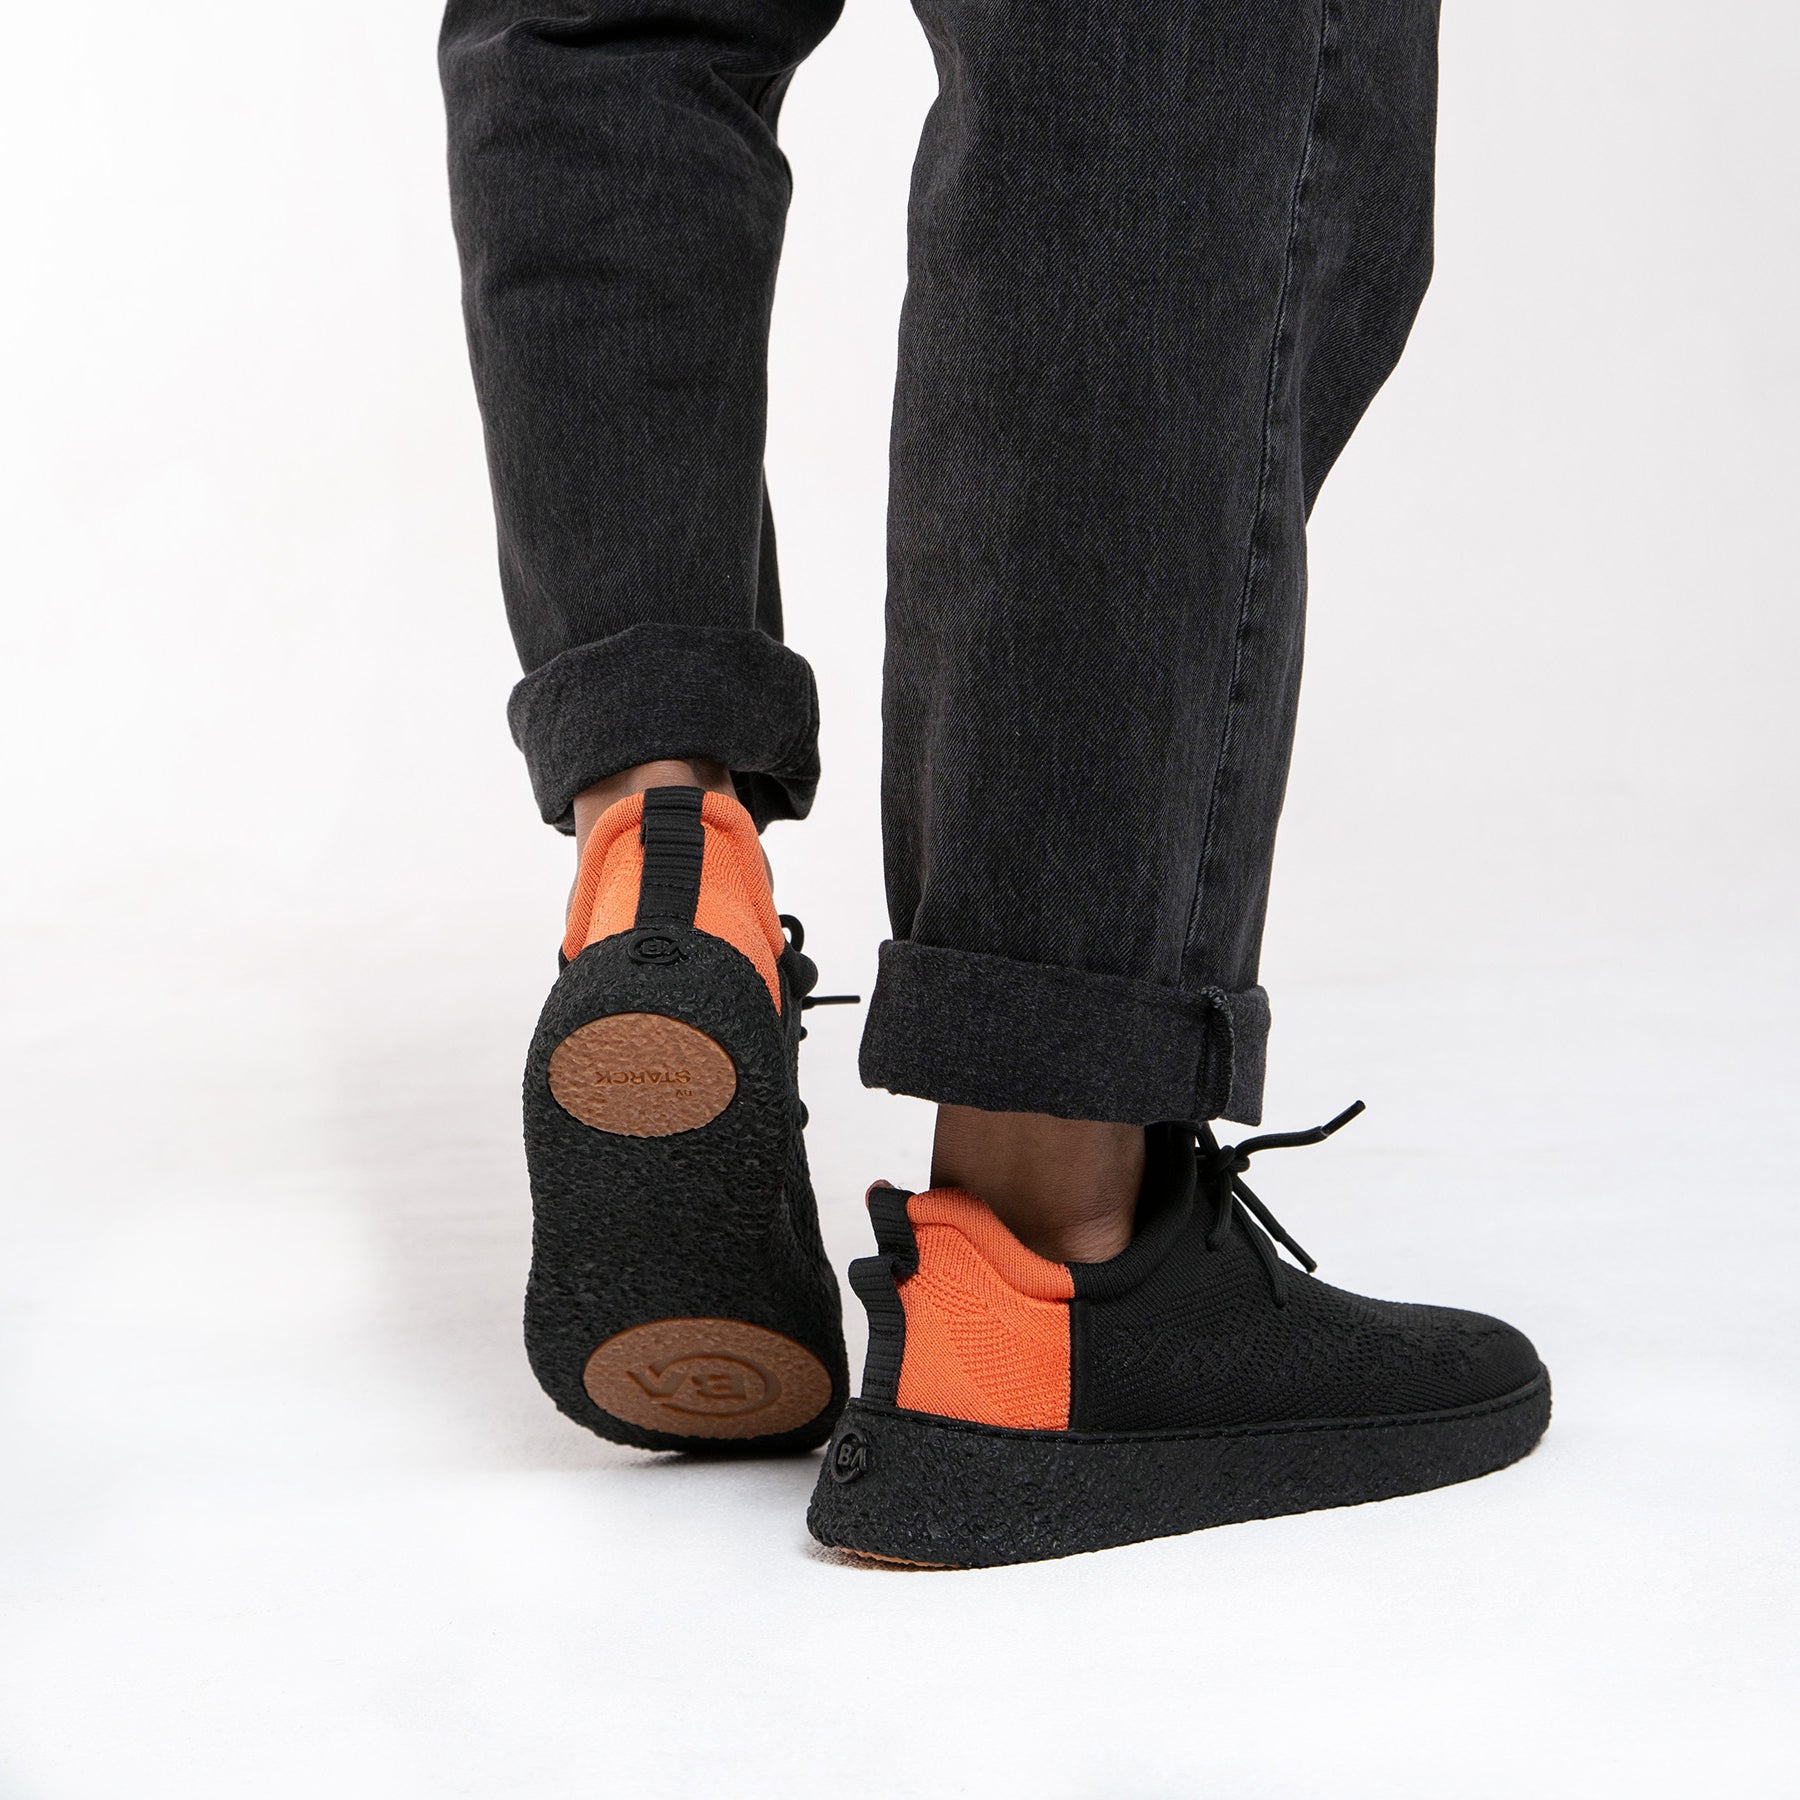 Baliston® by STARCK Smart Shoes | Black/Orange - Black